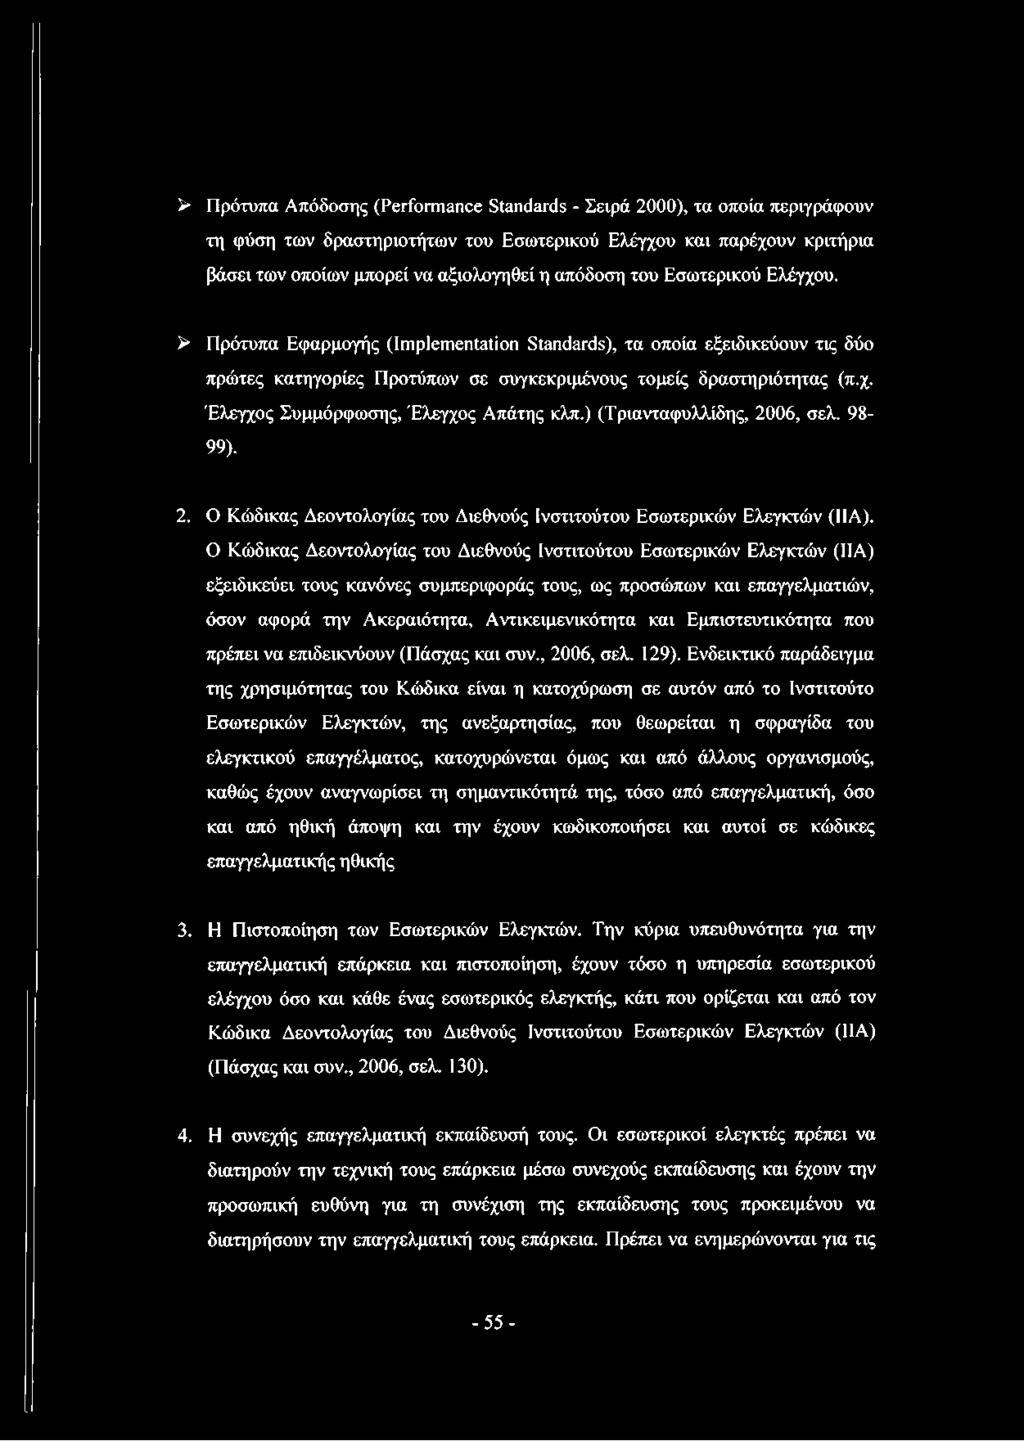 ) (Τριανταφυλλίδης, 2006, σελ. 98-99). 2. Ο Κώδικας Δεοντολογίας του Διεθνούς Ινστιτούτου Εσωτερικών Ελεγκτών (ΙΙΑ).